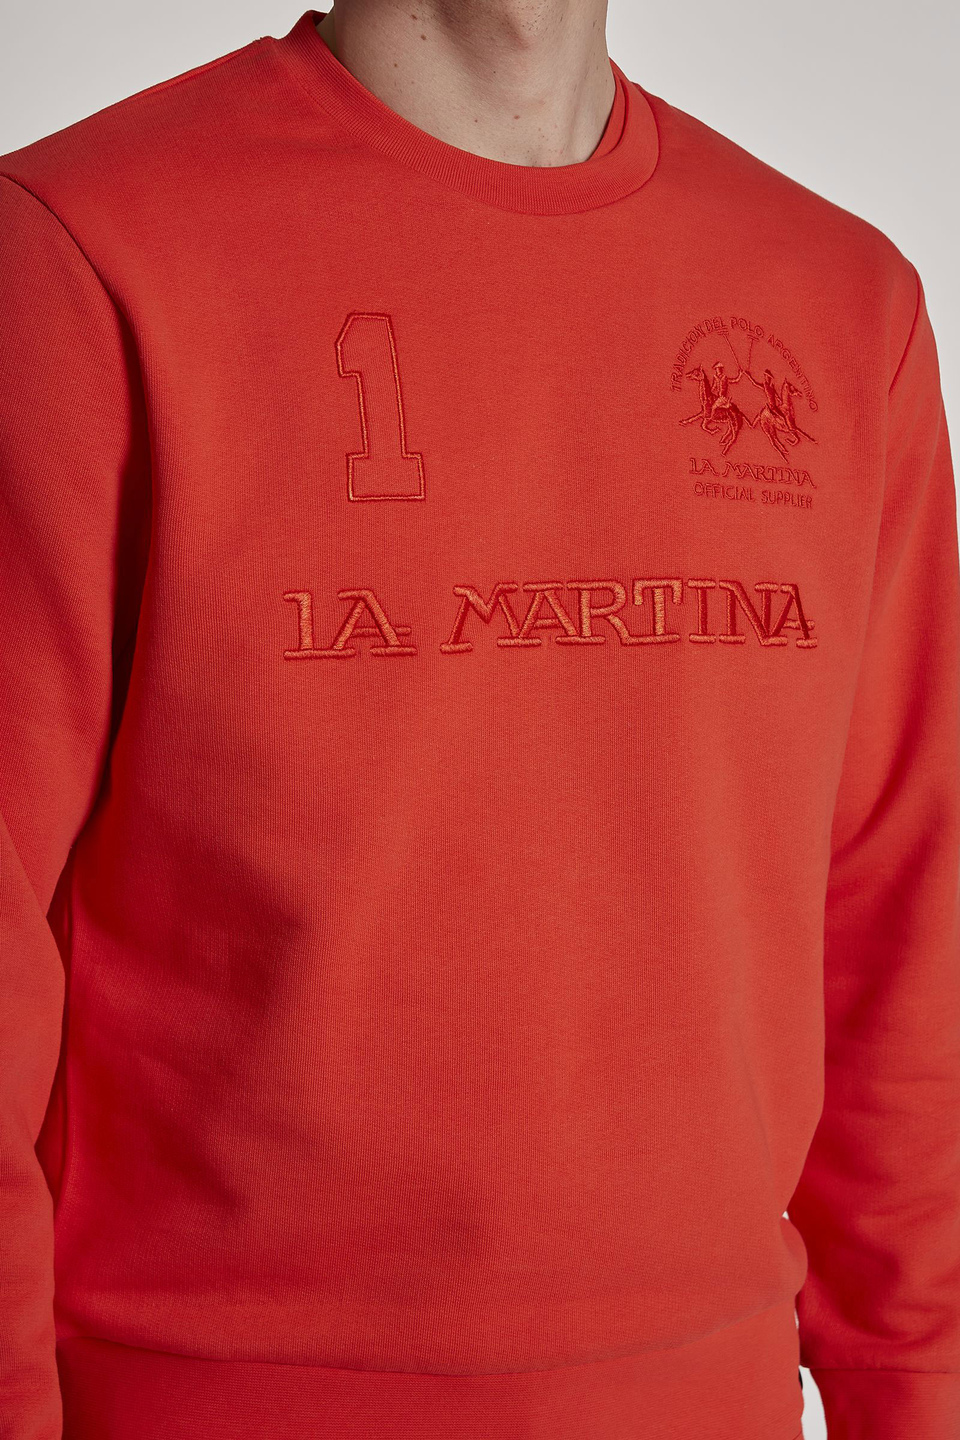 Sudadera de hombre de algodón, cuello redondo, corte regular | La Martina - Official Online Shop